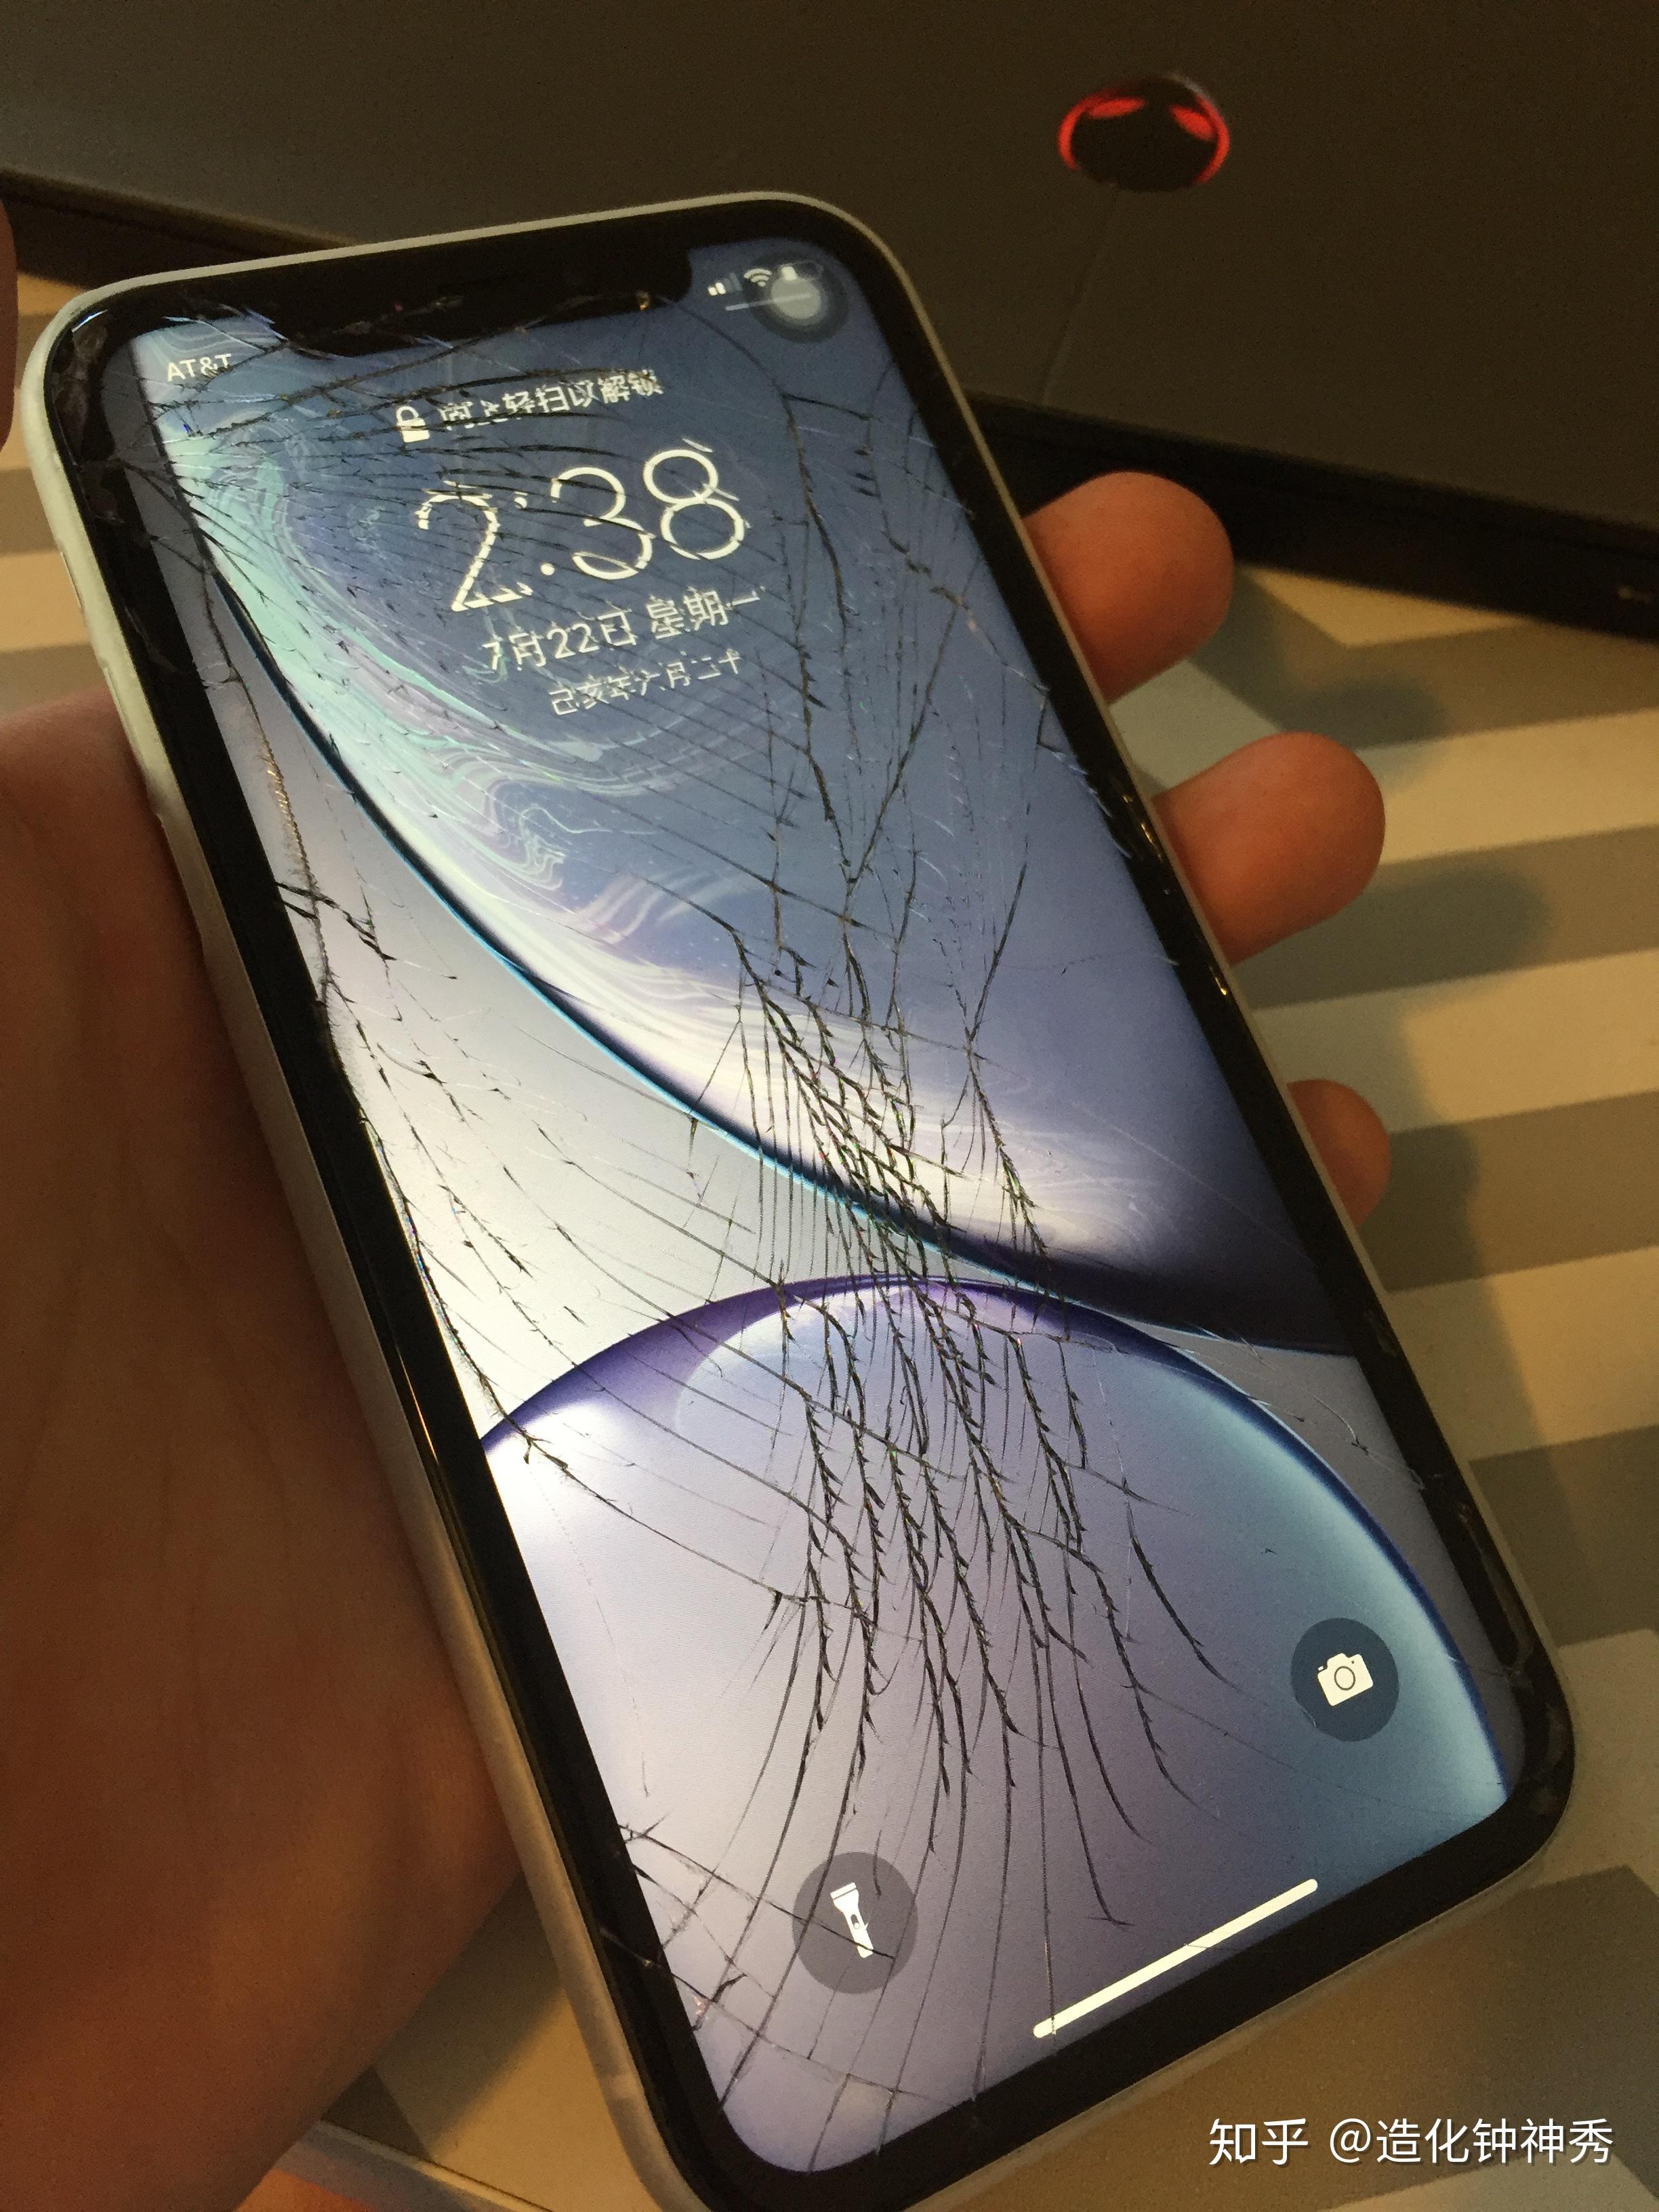 手机屏幕裂了,这个程度有影响吗?